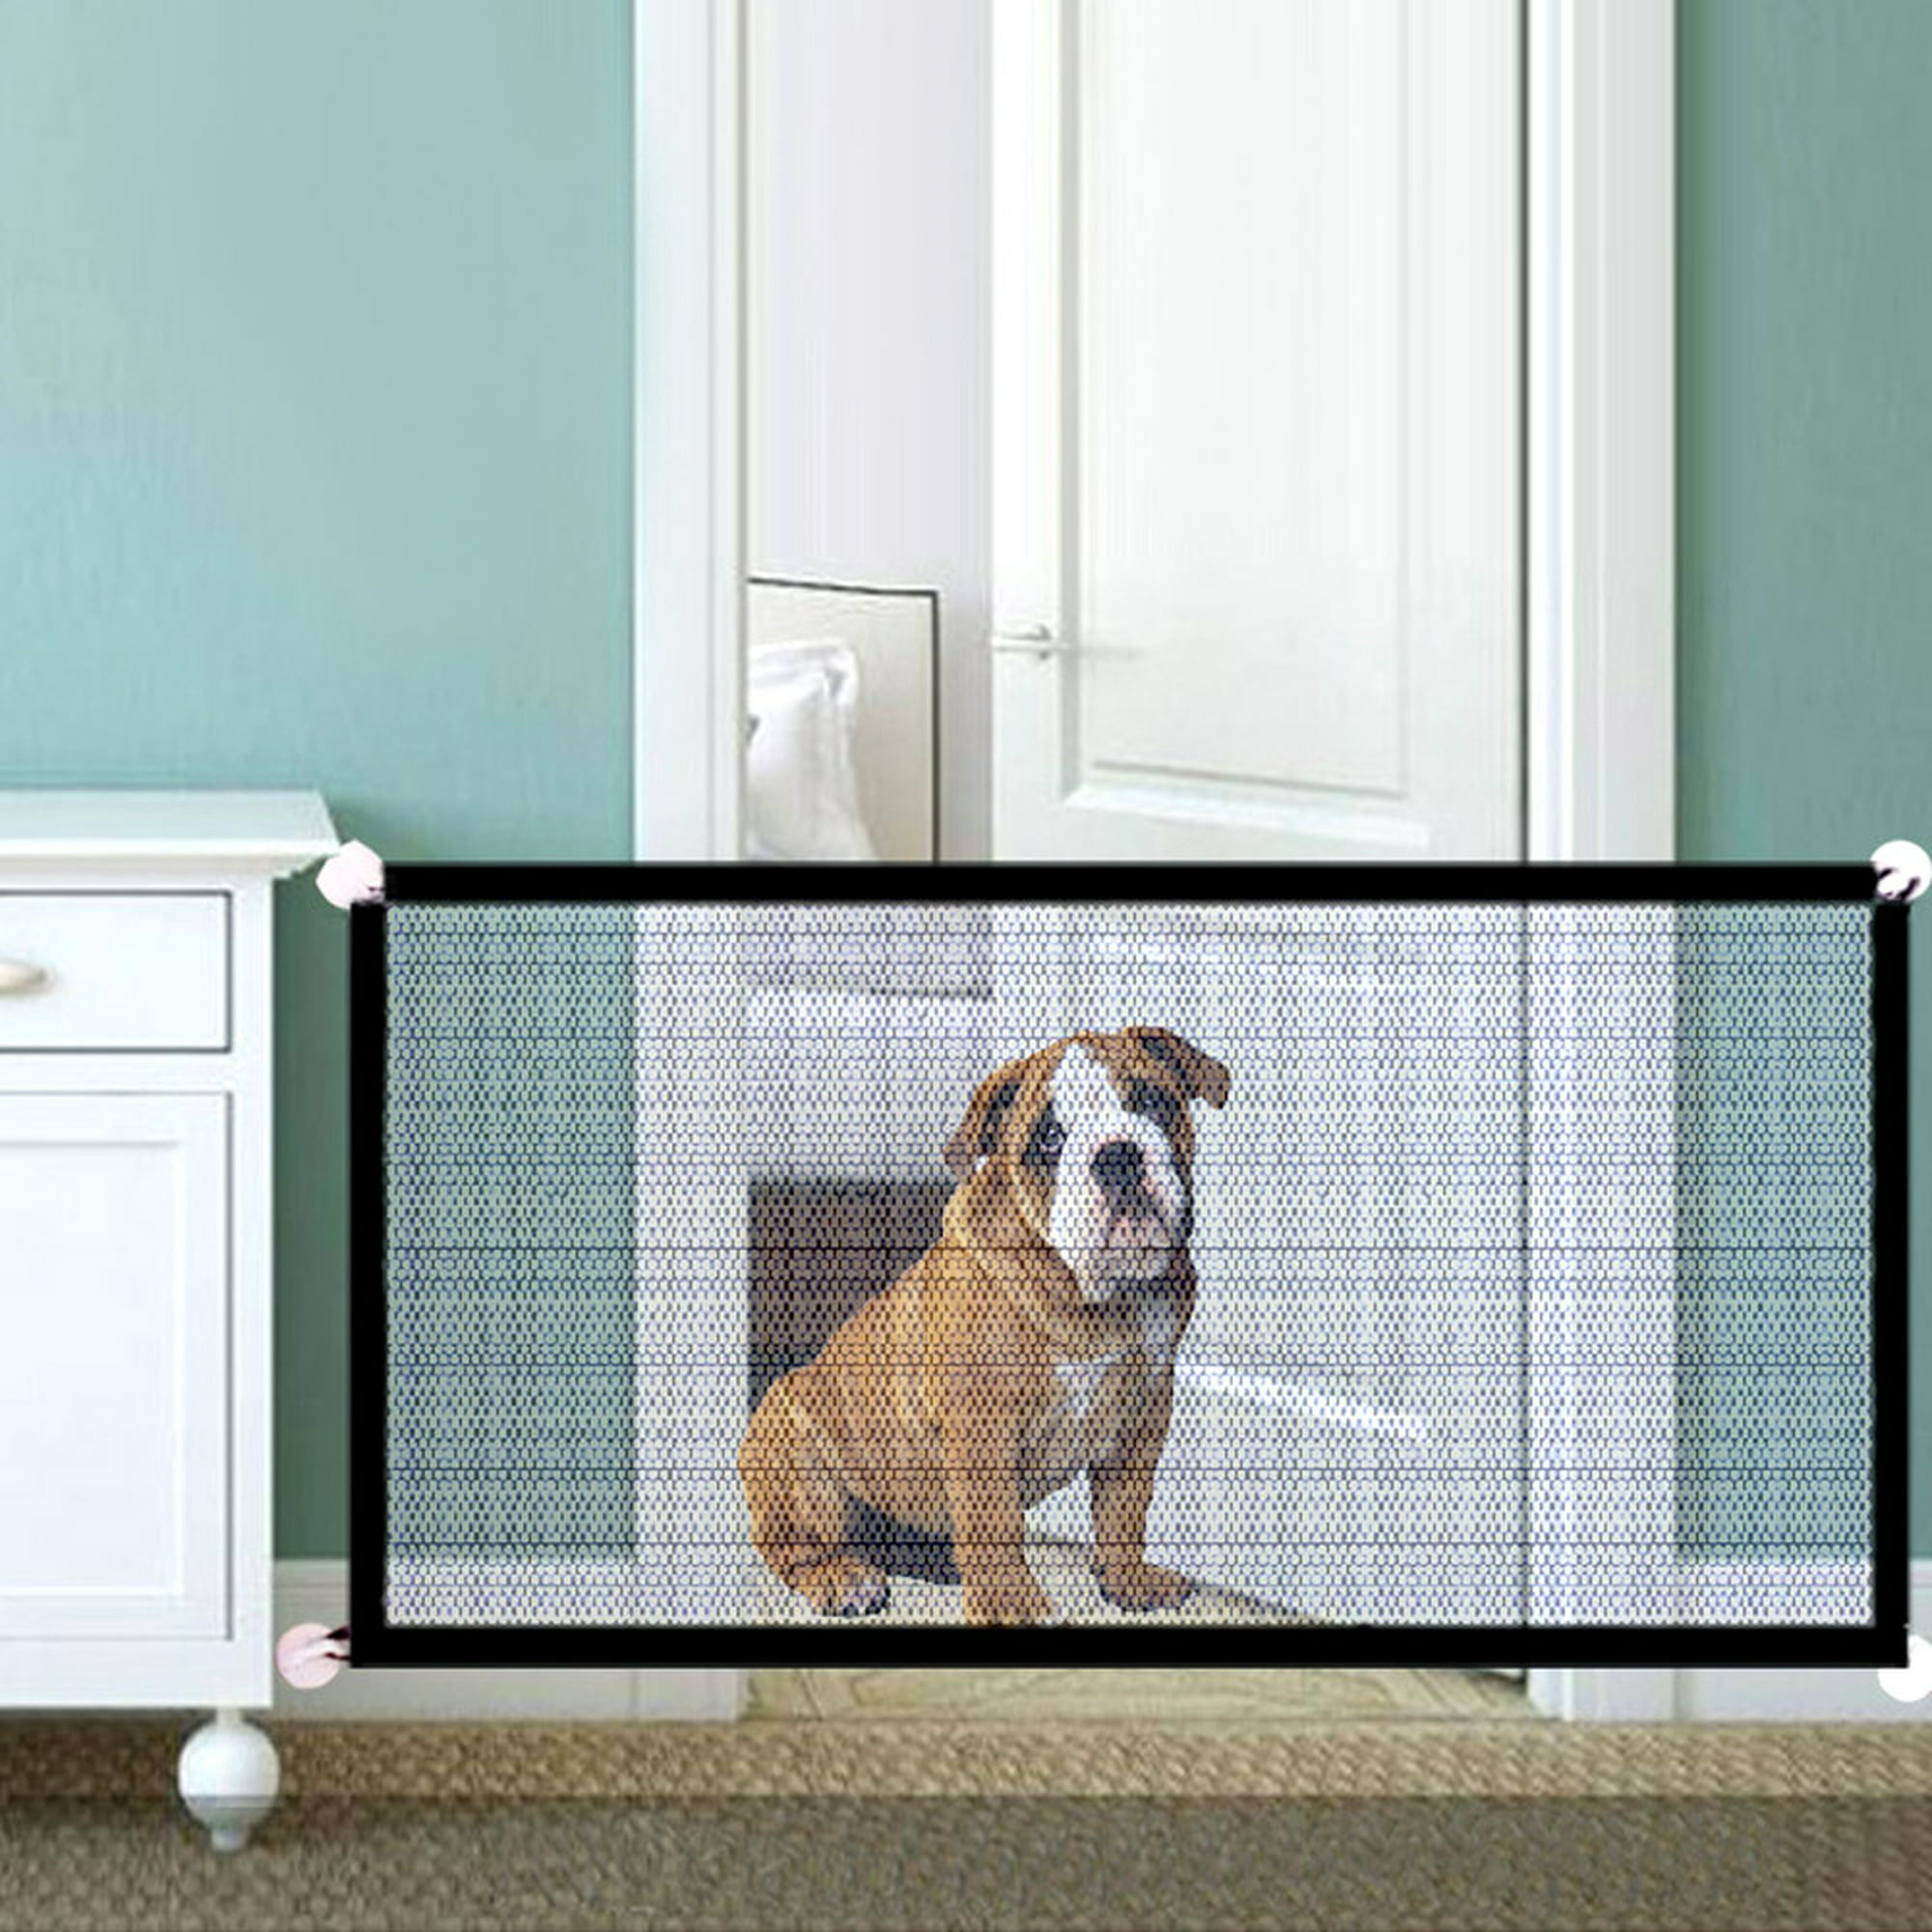 Puerta grande para perros de plástico para mascotas, puerta para perros con  magnético, panel de bloqueo para seguridad en el hogar, puerta automática